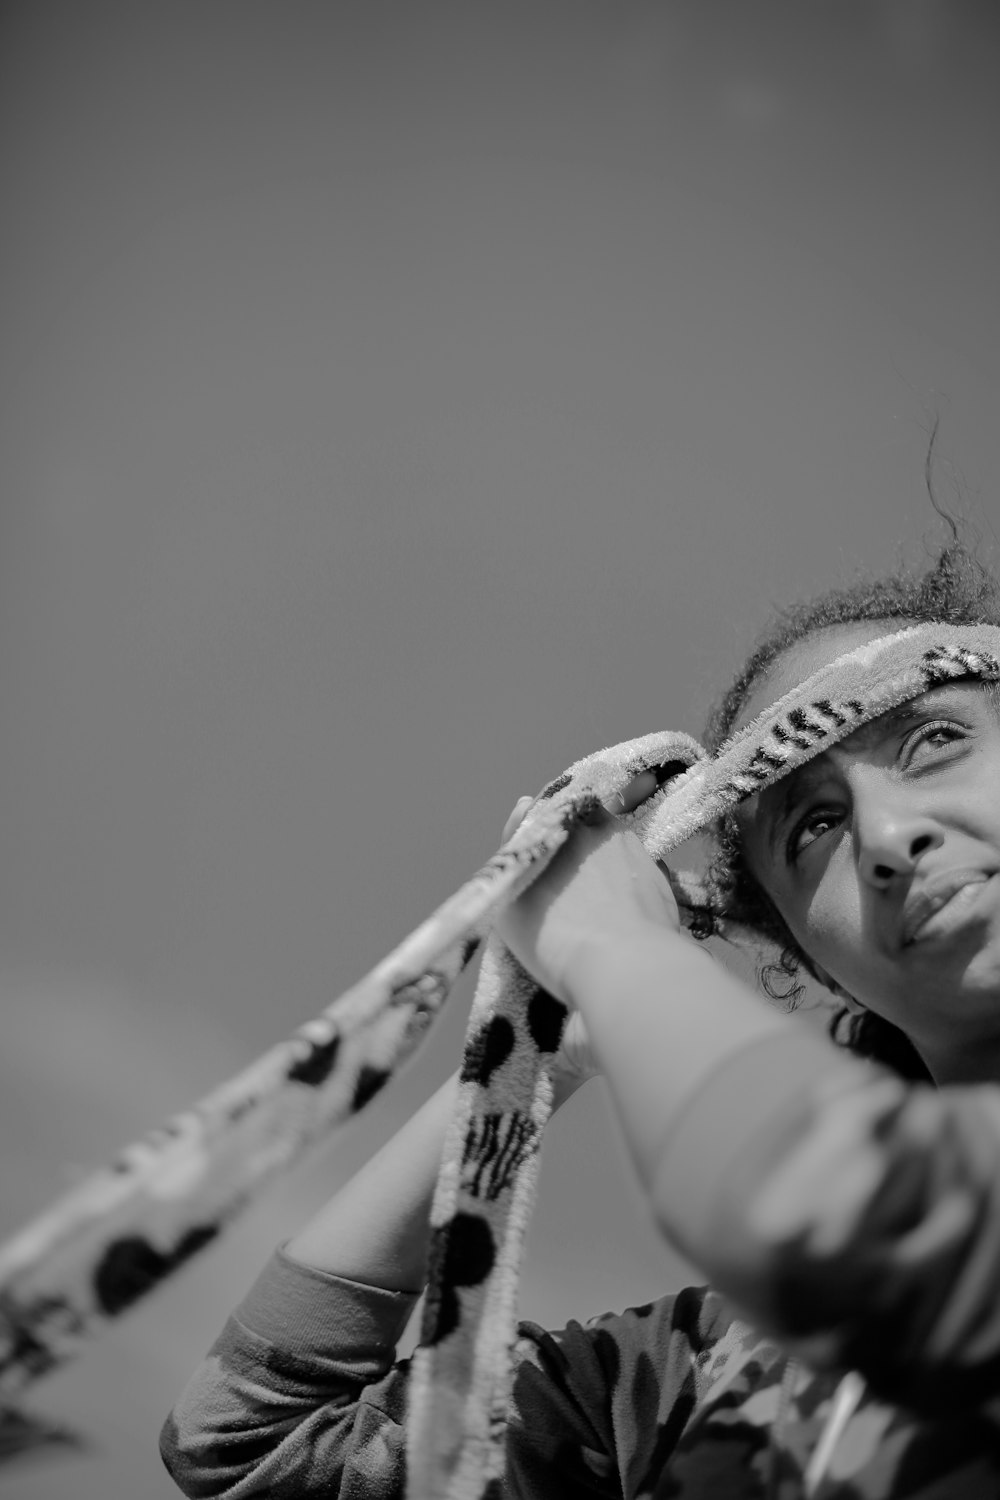 fotografia in scala di grigi di donna con tessuto